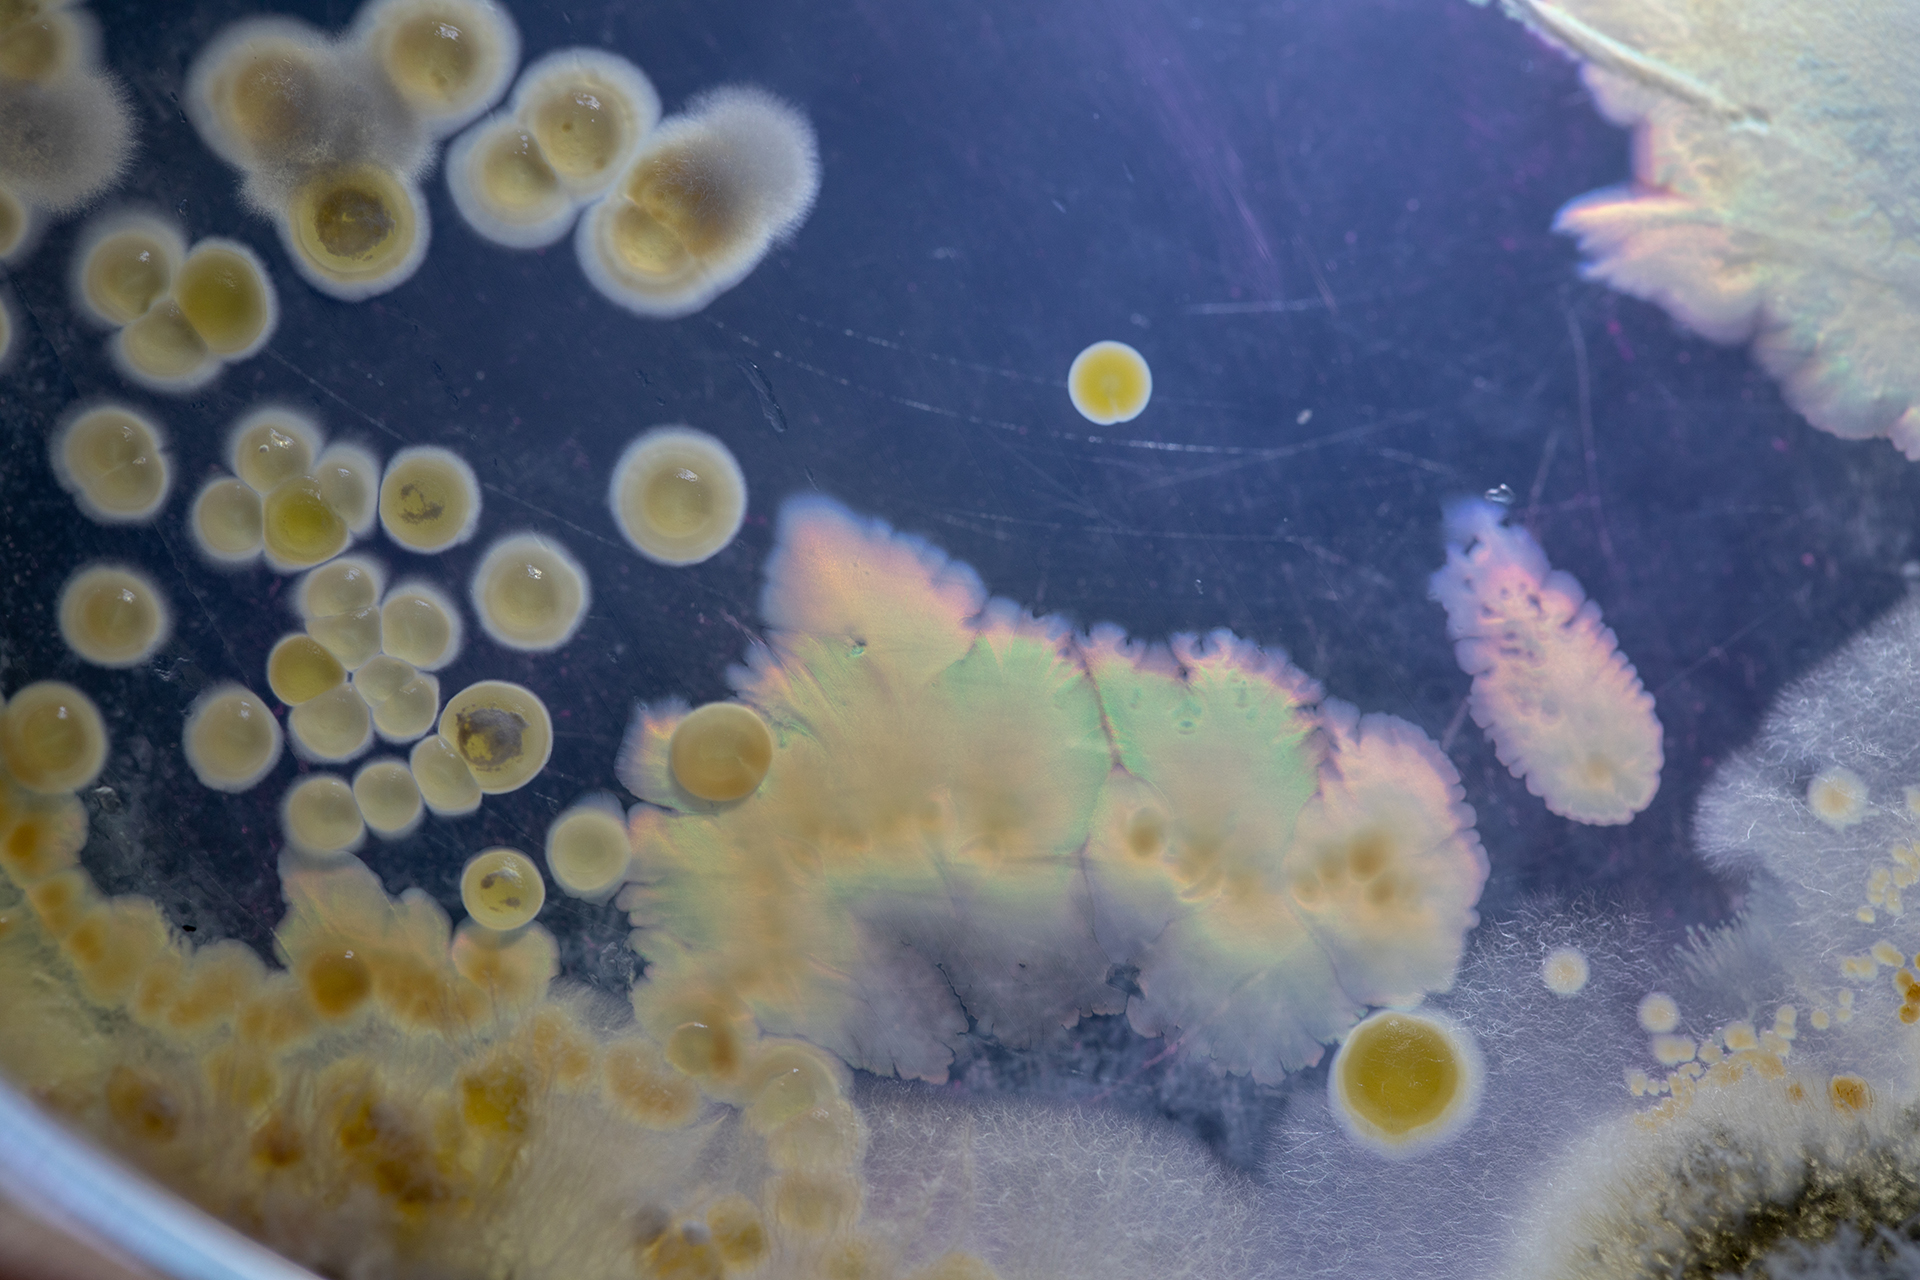 Bacterial growth on agar plate